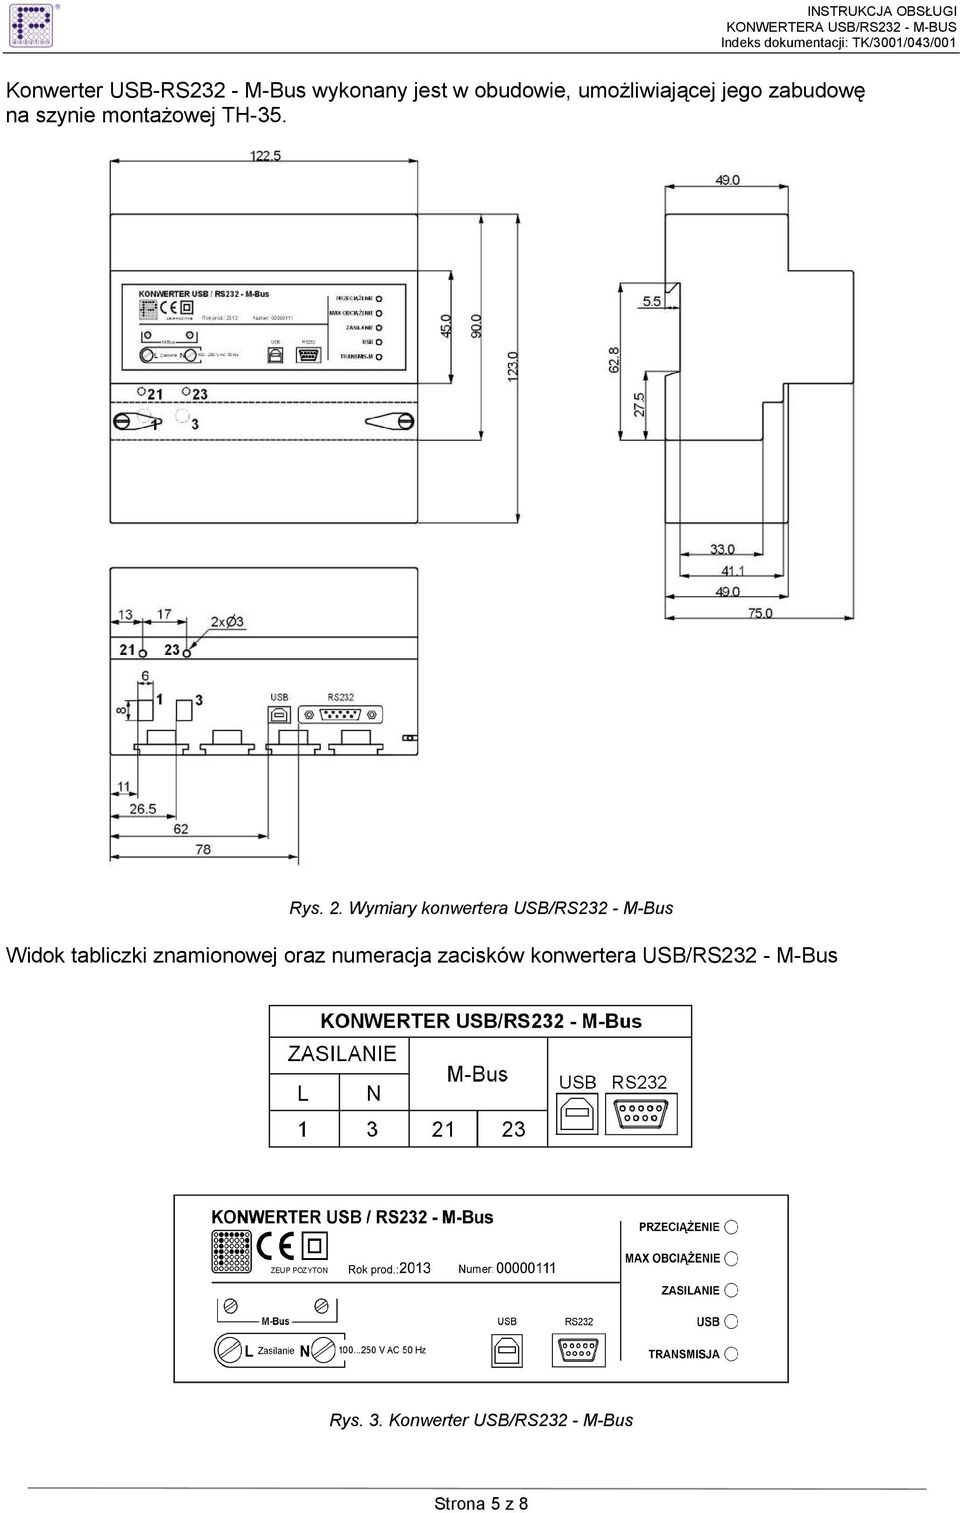 Wymiary konwertera USB/RS232 - M-Bus Widok tabliczki znamionowej oraz